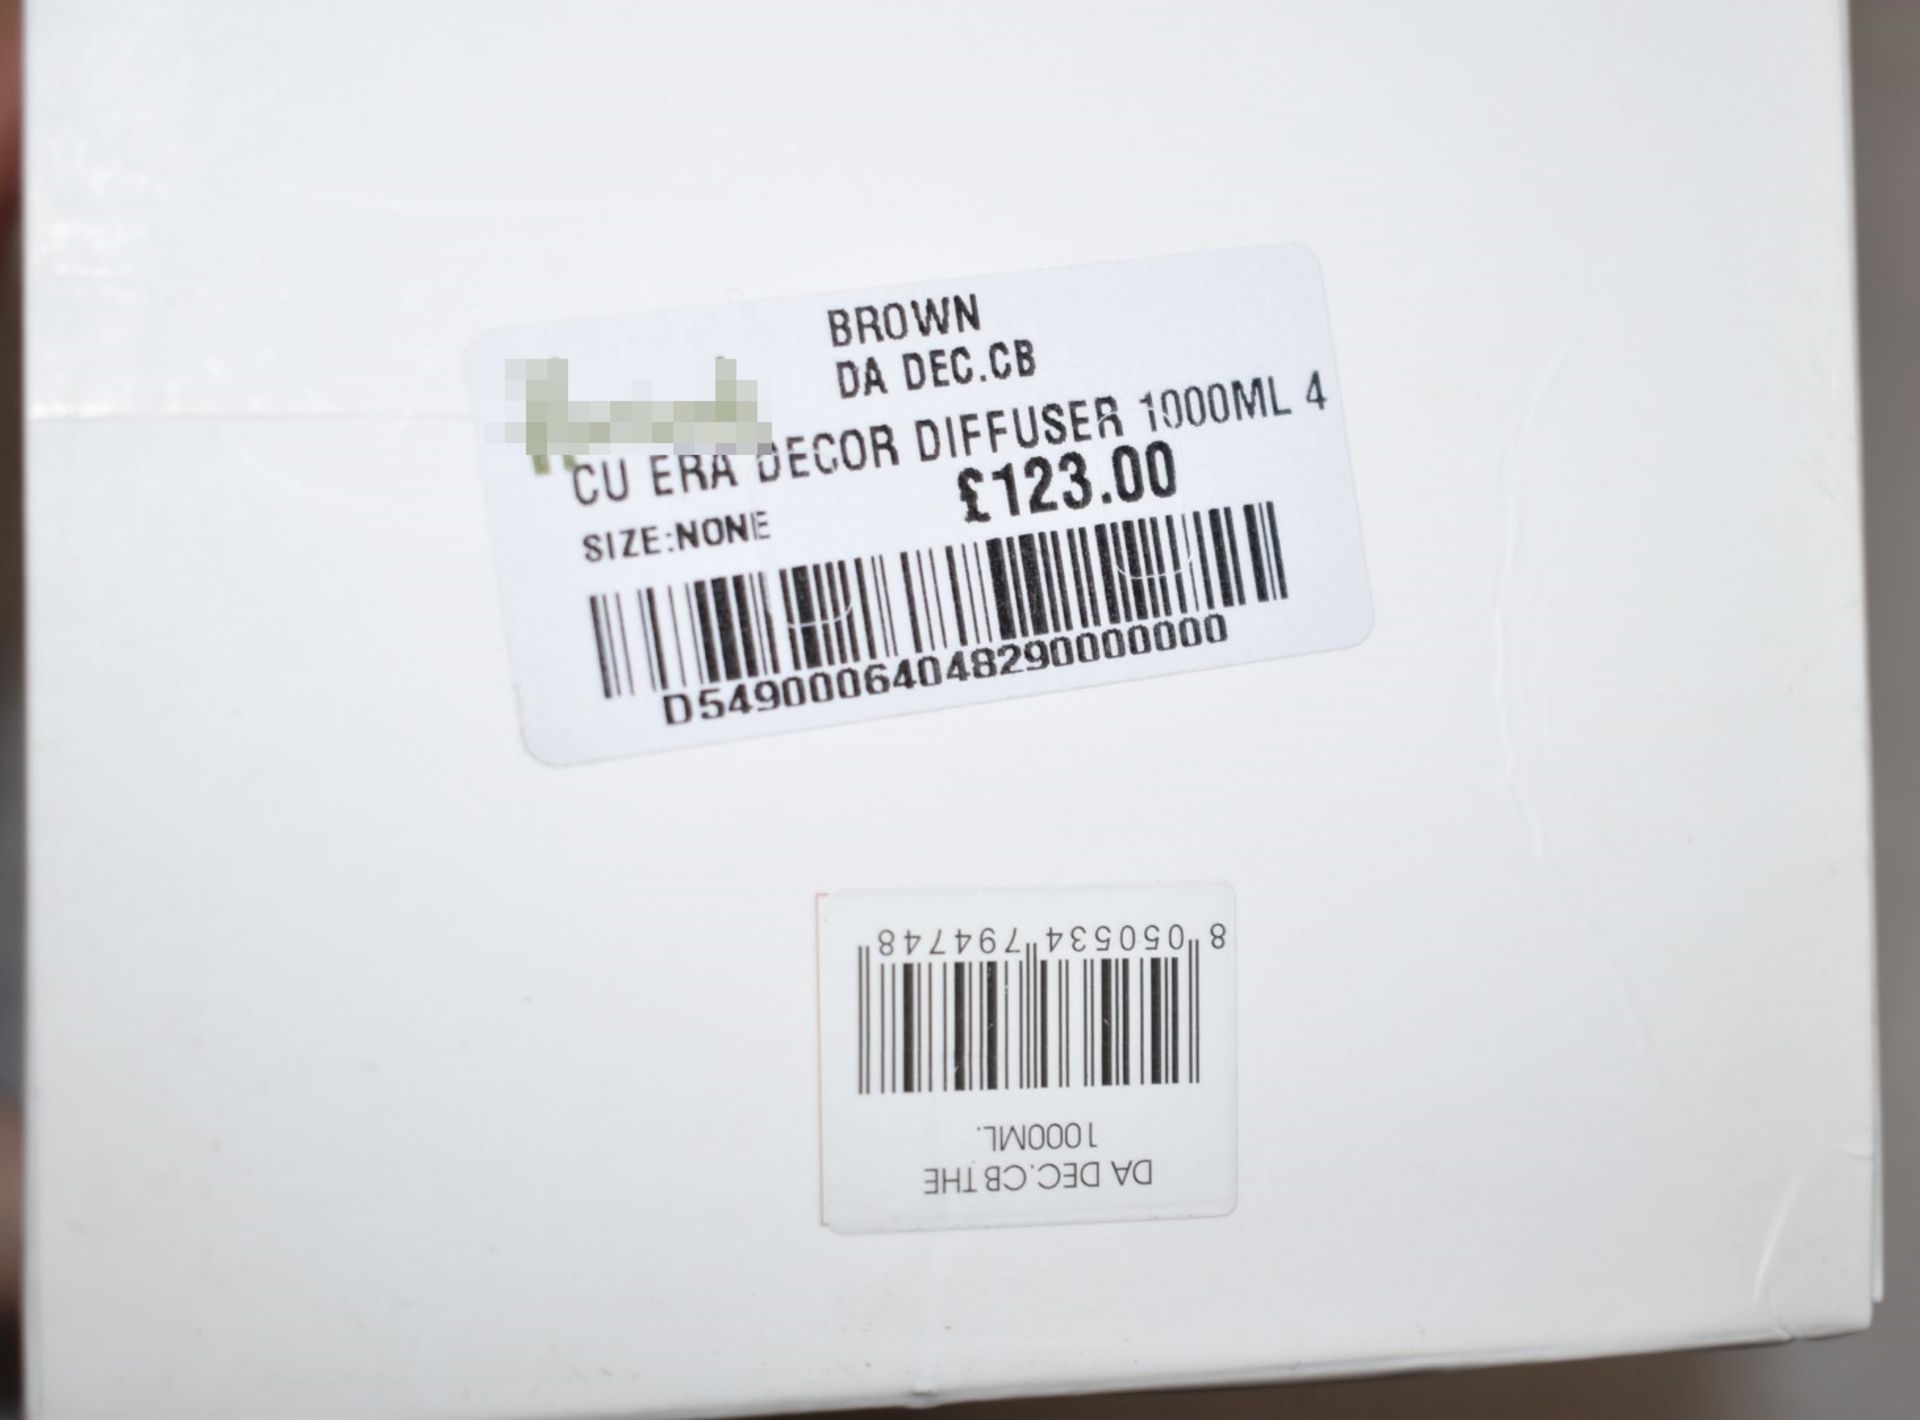 1 x CULTI MILANO Era Décor Diffuser (1L) - Original Price £123.00 - Image 6 of 7